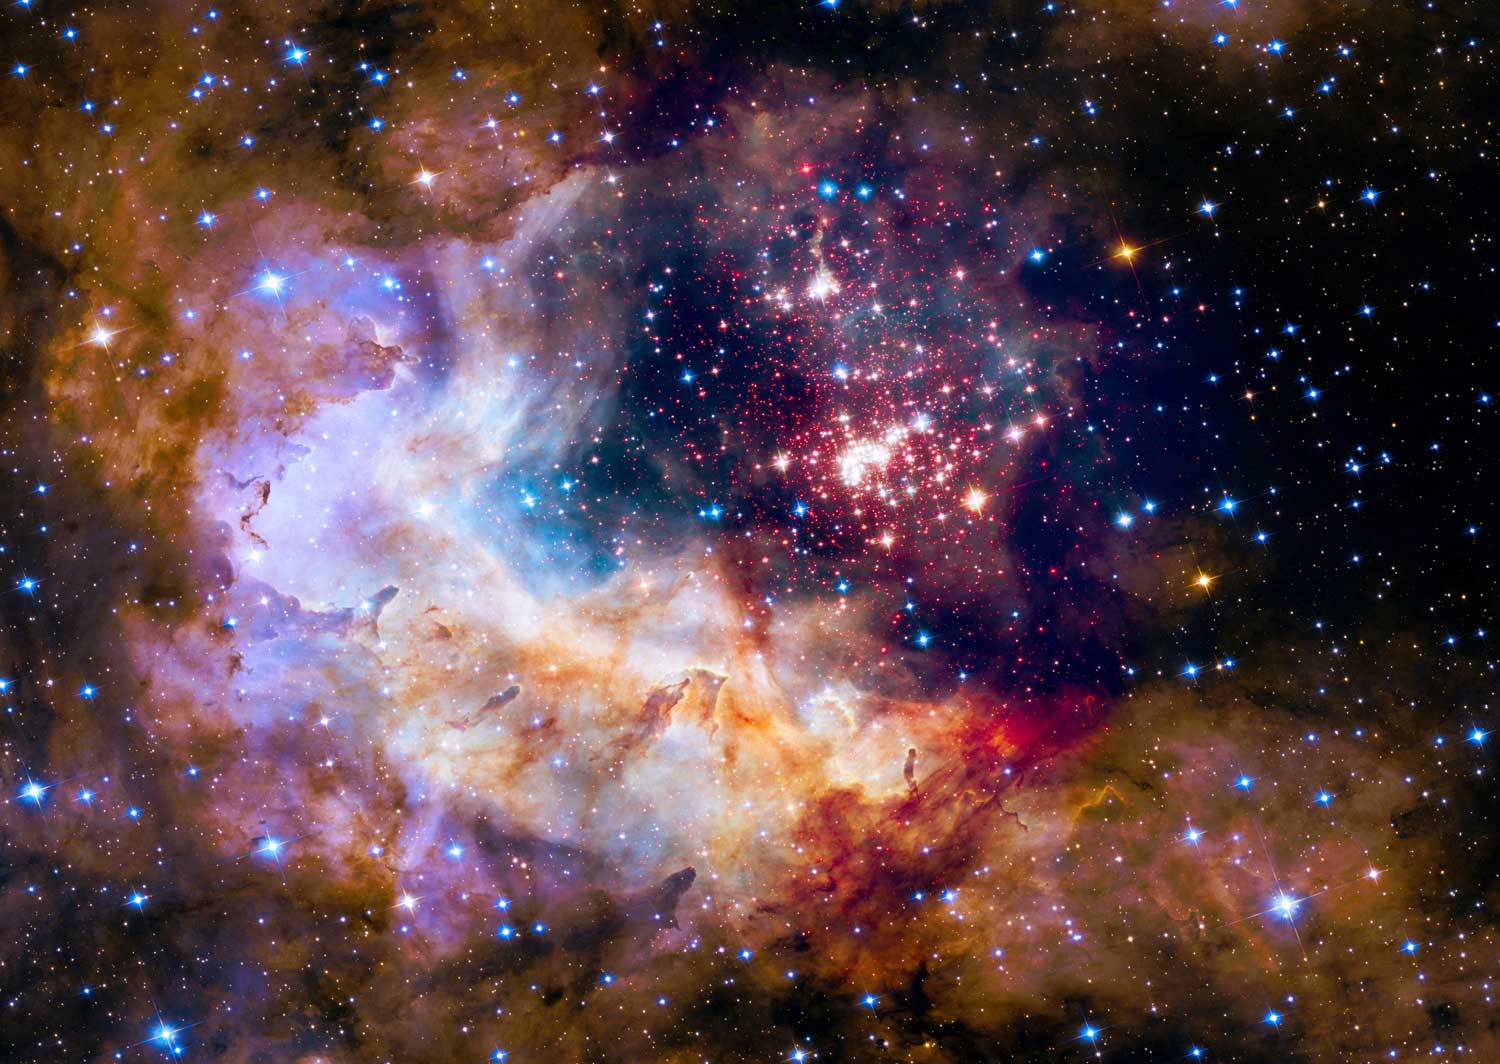 Puzzle Enjoy Cúmulo Estelar en la Vía Láctea de 1000 Piezas